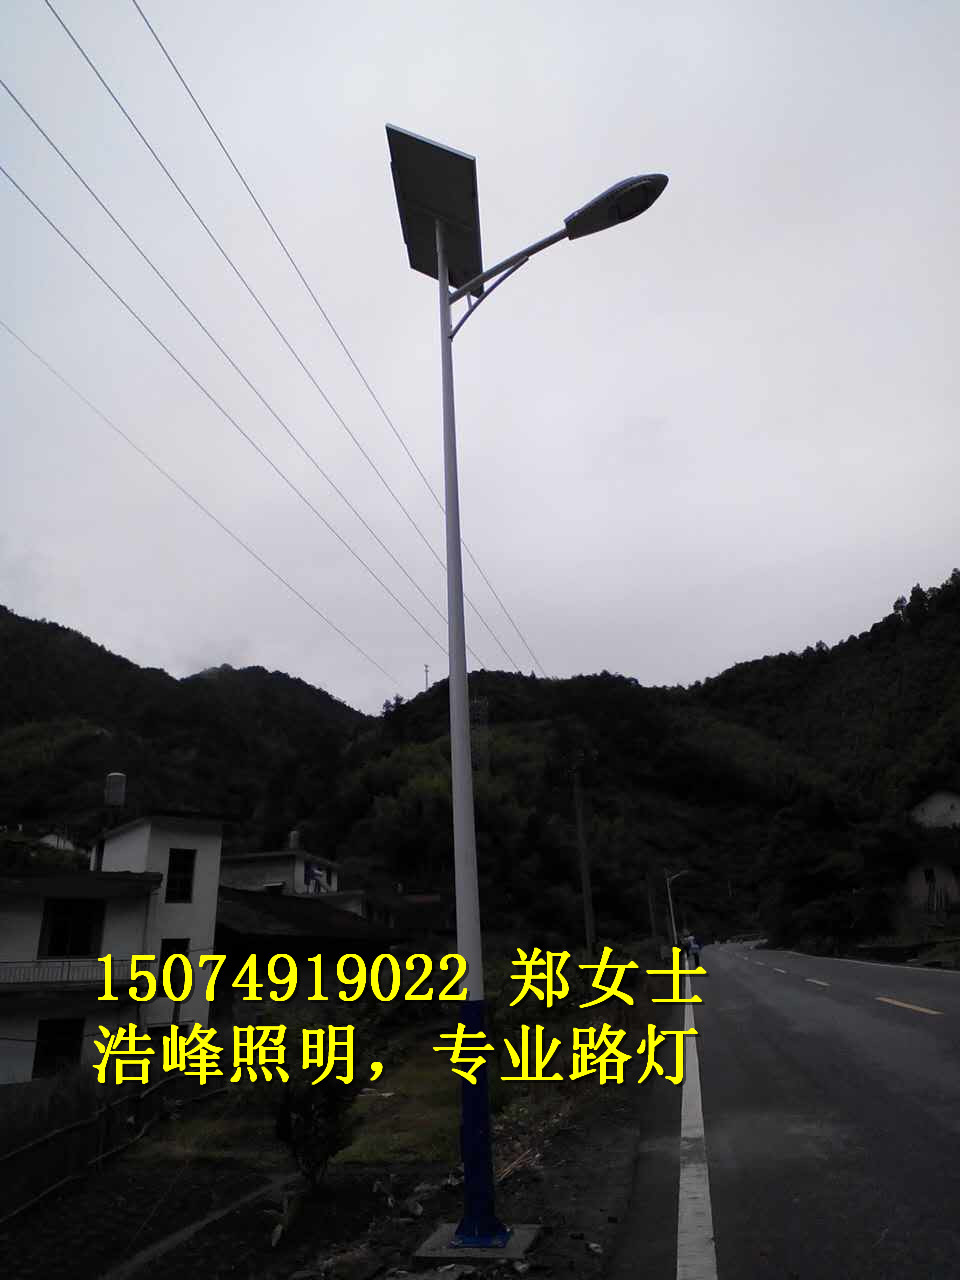 贵州三都/惠水太阳能路灯厂家 三都太阳能路灯厂家哪家好